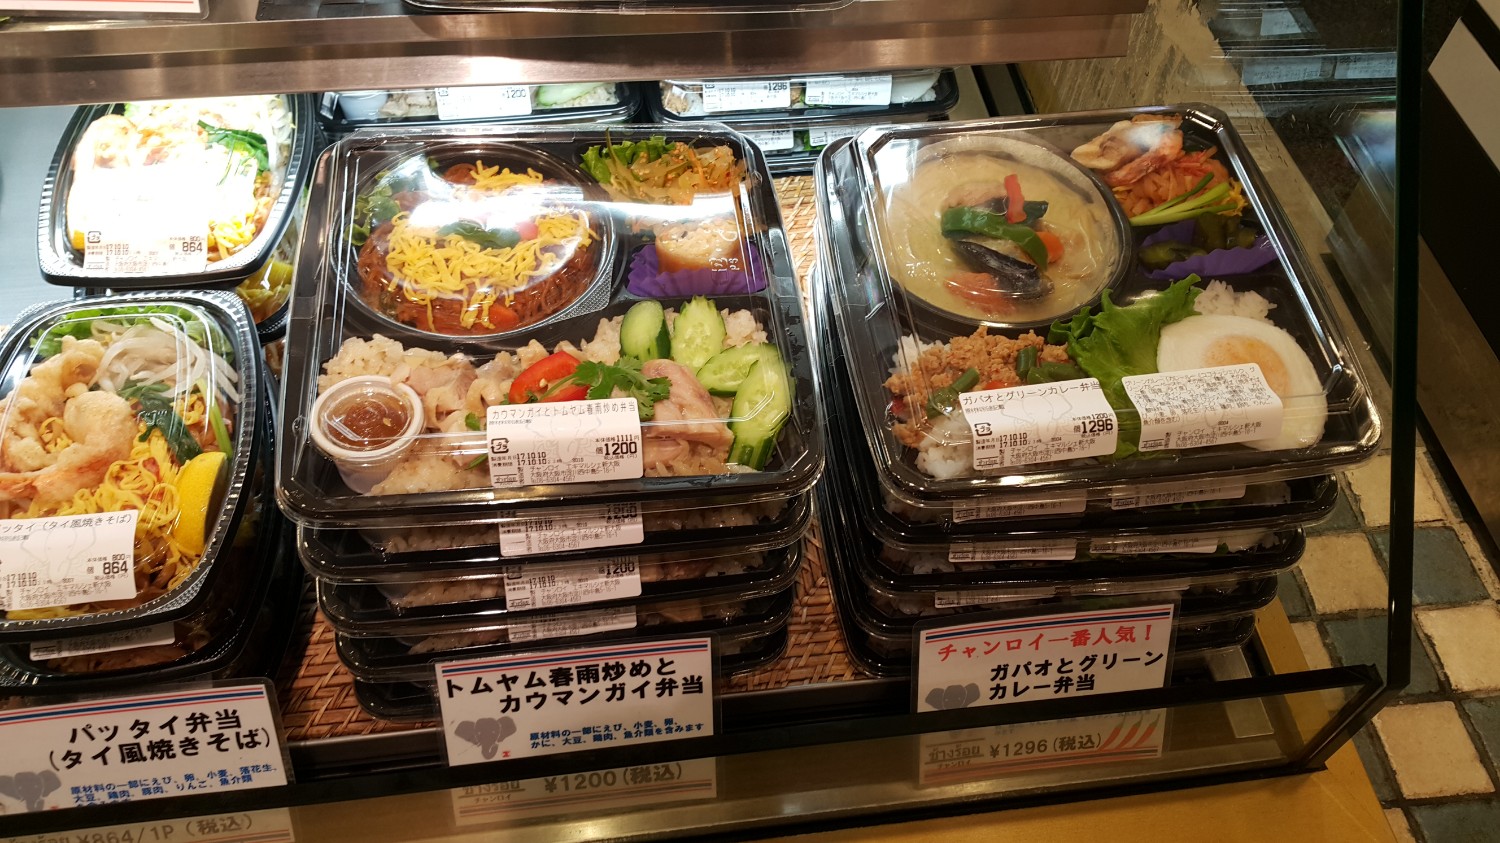 "ช้างร้อย" อาหารไทย ในข้าวกล่องเบนโตะแบบญี่ปุ่น สถานีรถไฟ